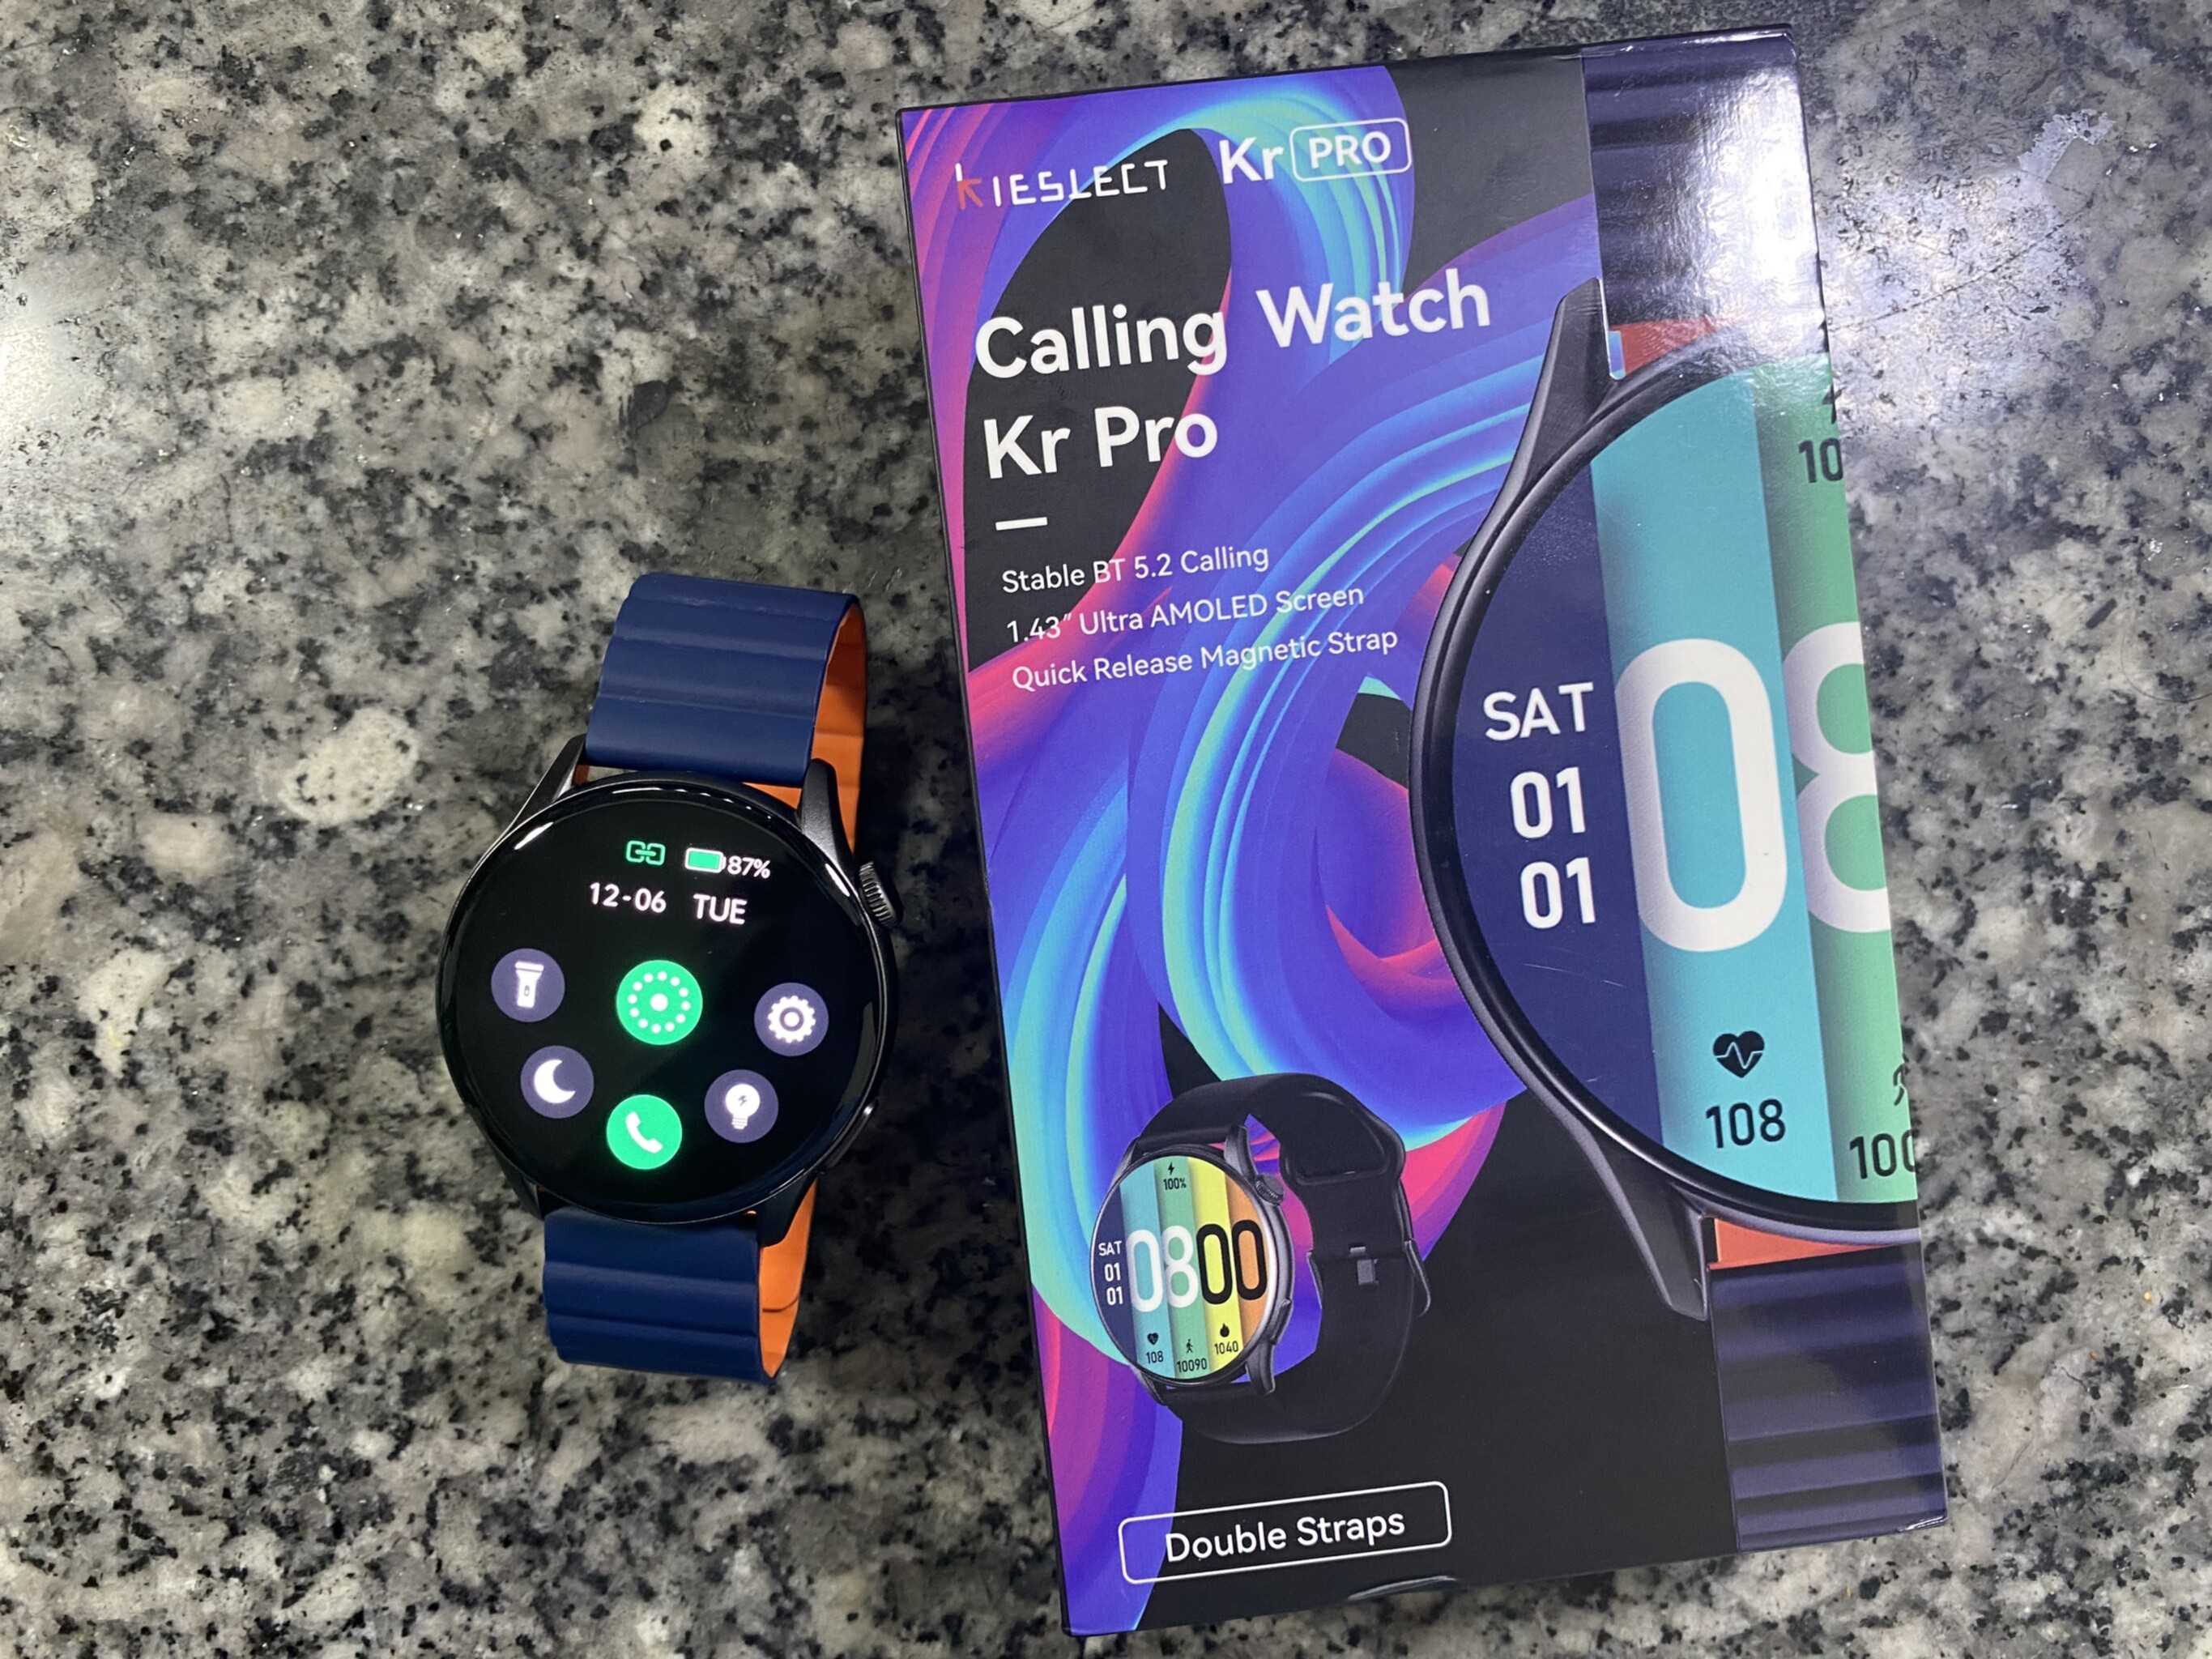 Đồng hồ đeo tay Kieslect Smart Calling Watch KR Pro
Ngon- bổ- rẻ